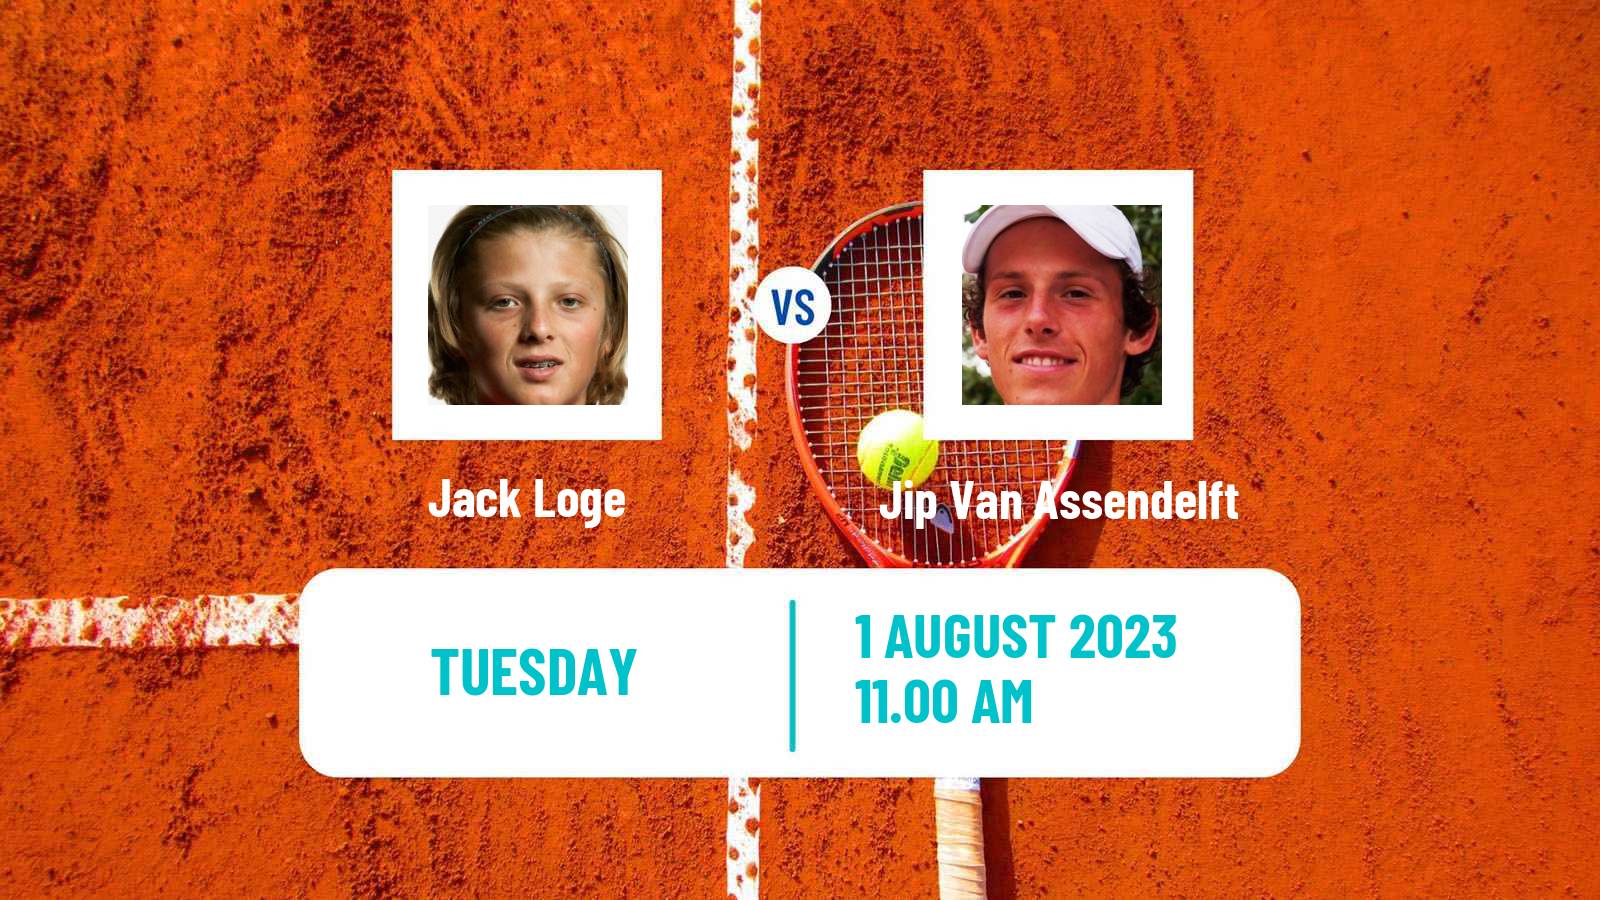 Tennis ITF M15 Eindhoven Men Jack Loge - Jip Van Assendelft